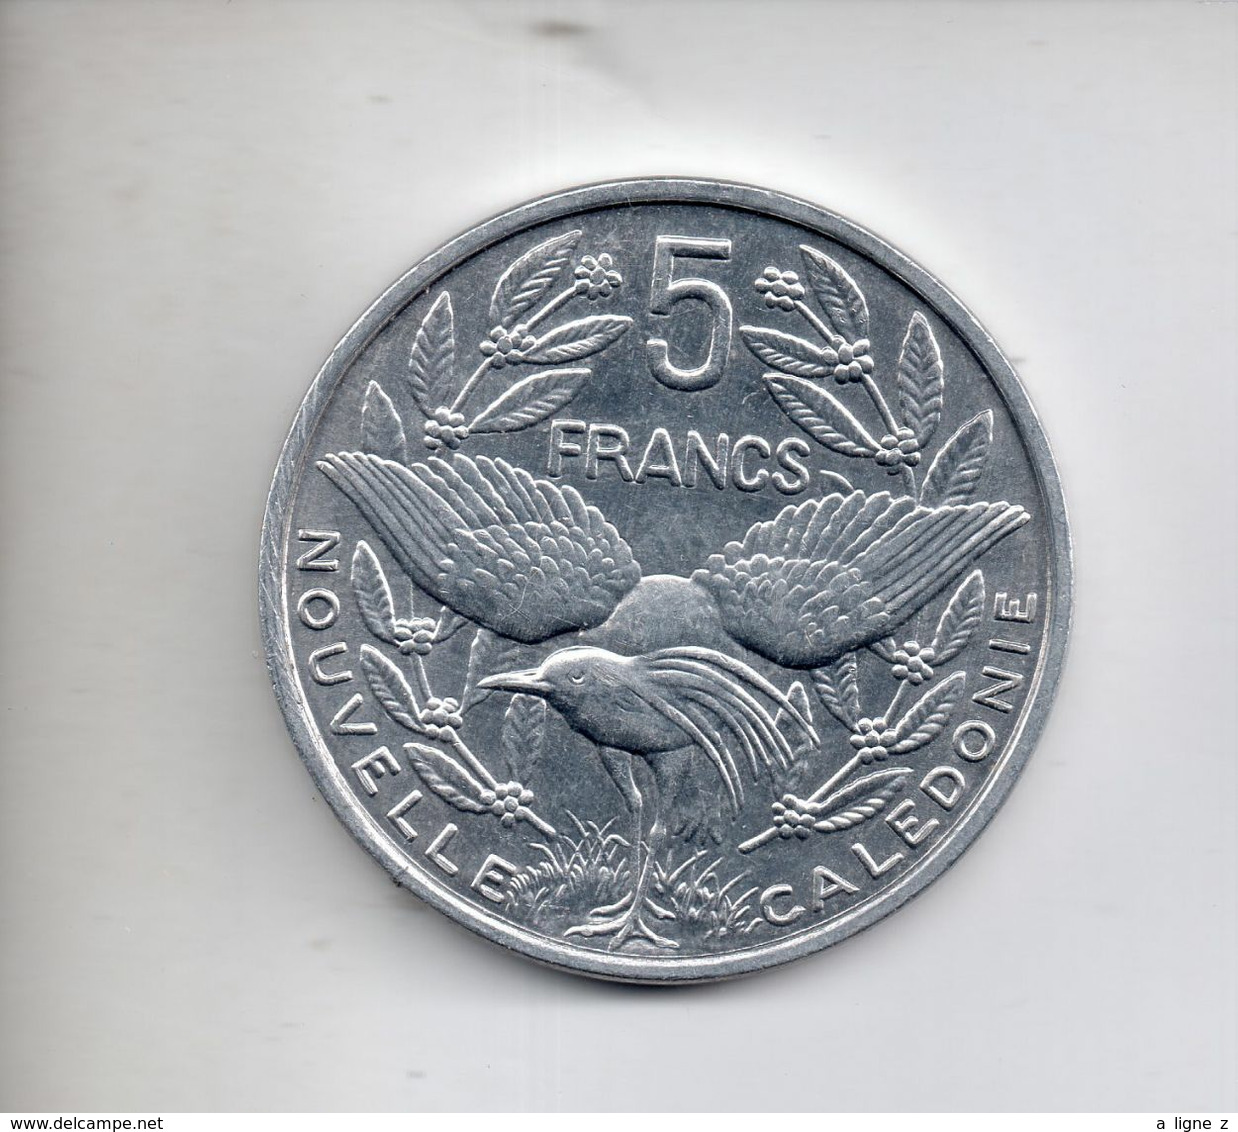 REF MON6 Monnaie Coin Nouvelle Calédonie 5 Francs 1994 TTB/SUP - New Caledonia